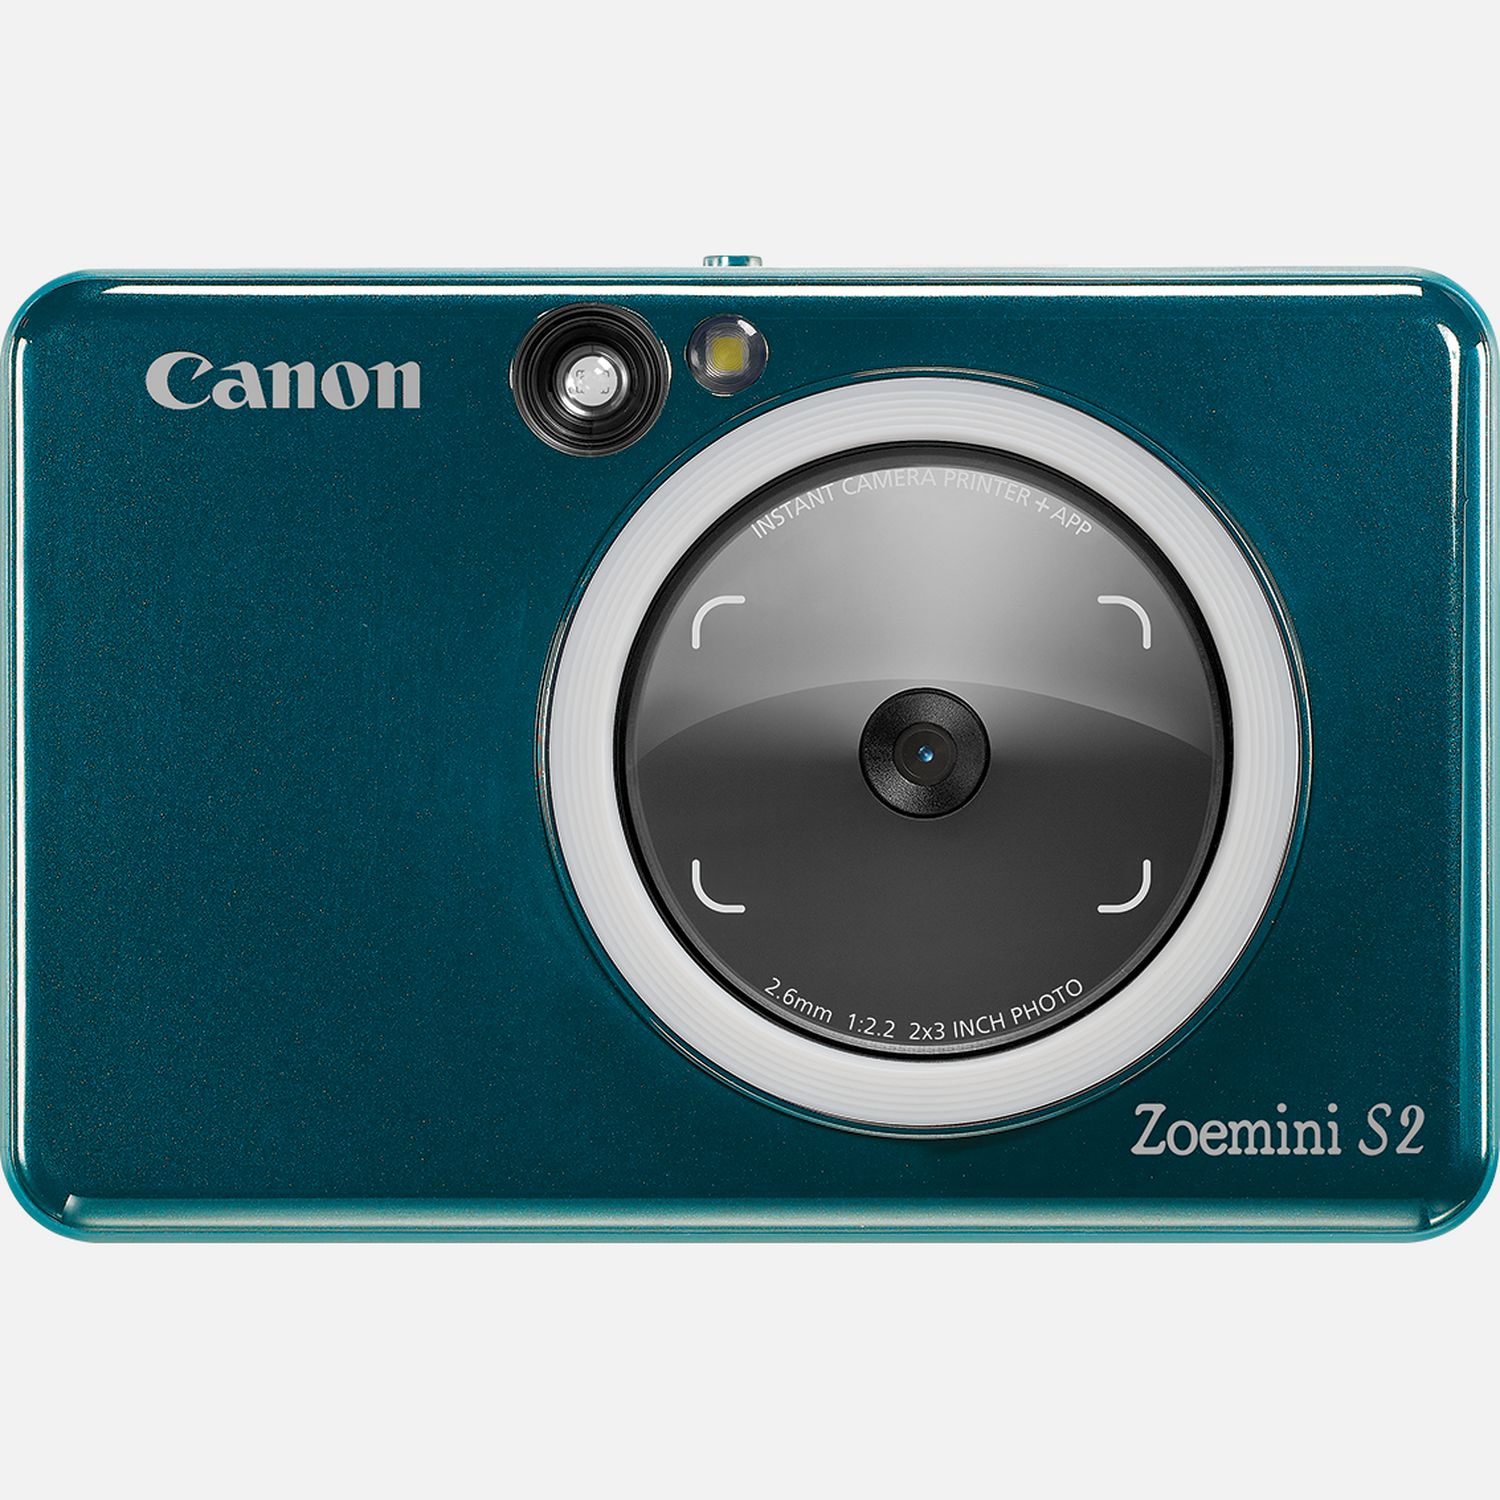 Fotocamera istantanea a colori Canon Zoemini S2, verde acqua